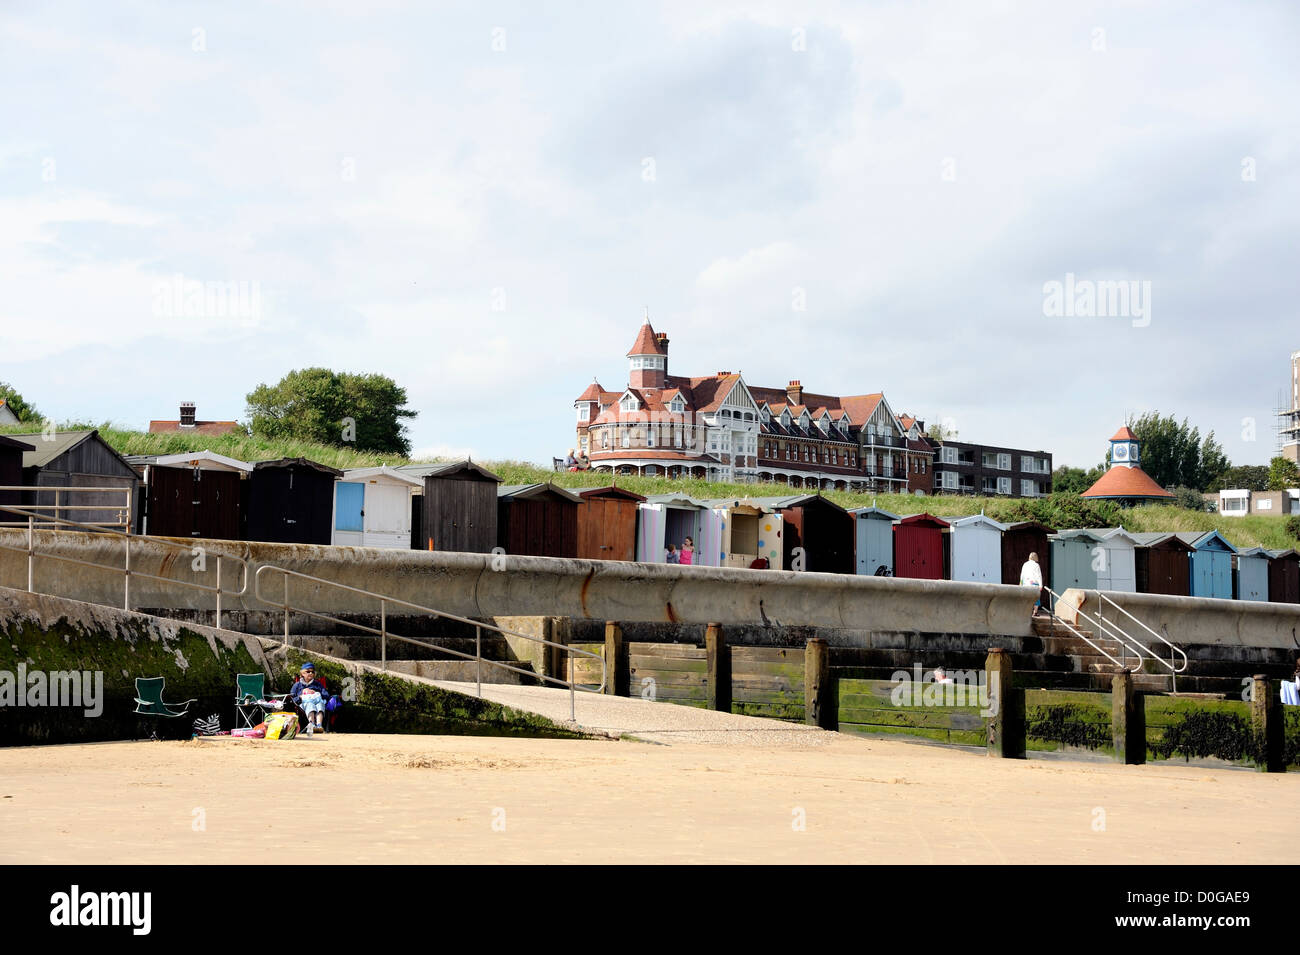 Cabines de plage sur le front de mer de Frinton and on Sea, Essex, Royaume-Uni Banque D'Images